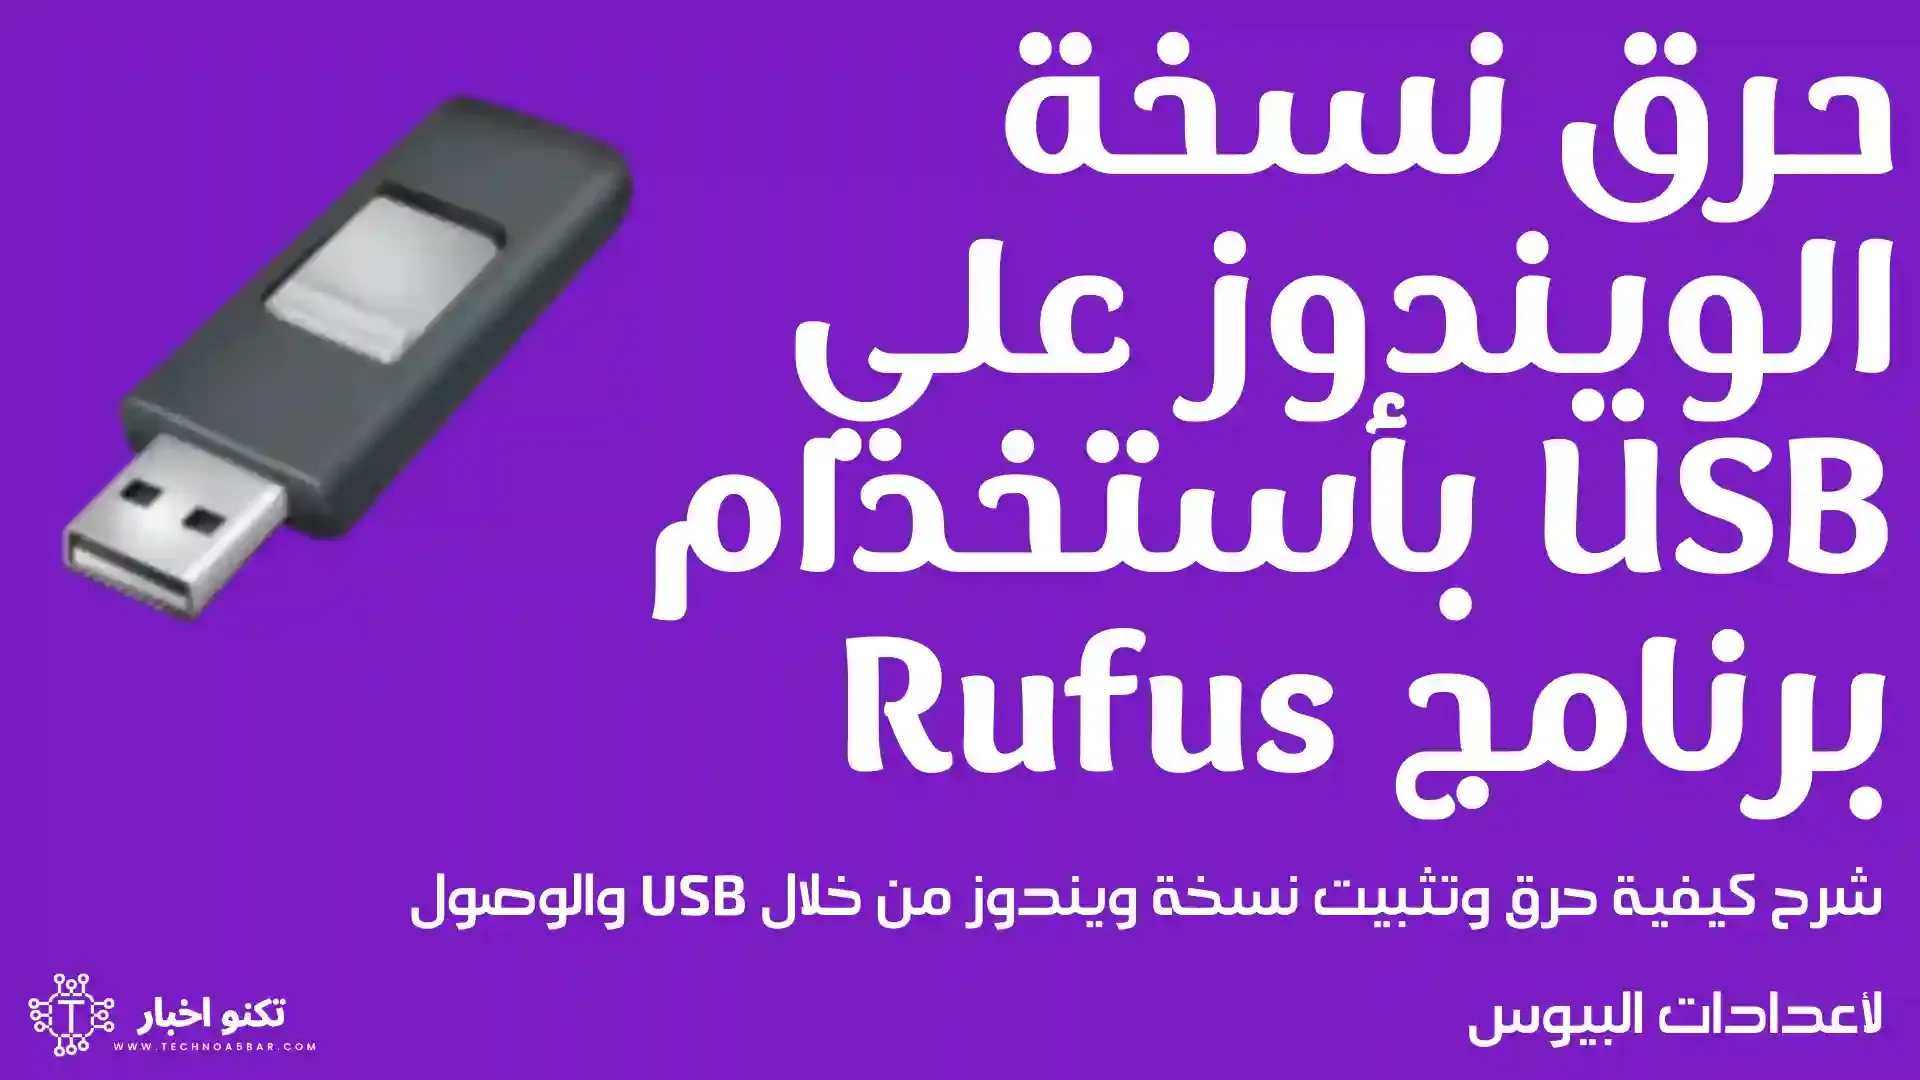 شرح حرق نسخة الويندوز علي فلاشة USB بأستخدام برنامج Rufus